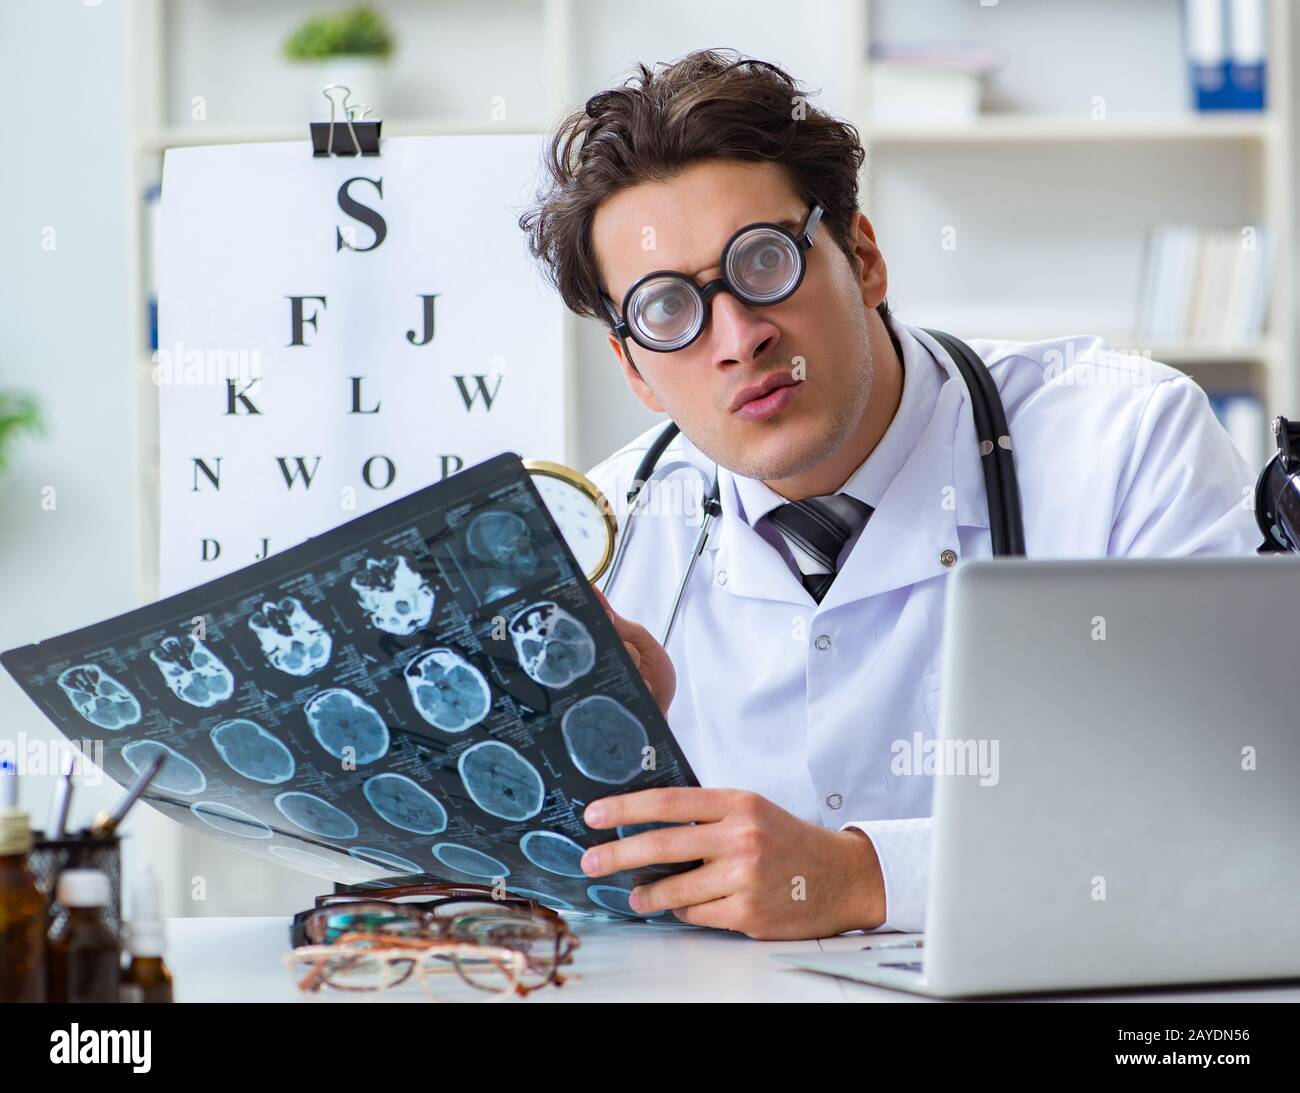 Funny occhio medico in divertente concetto medico Foto Stock